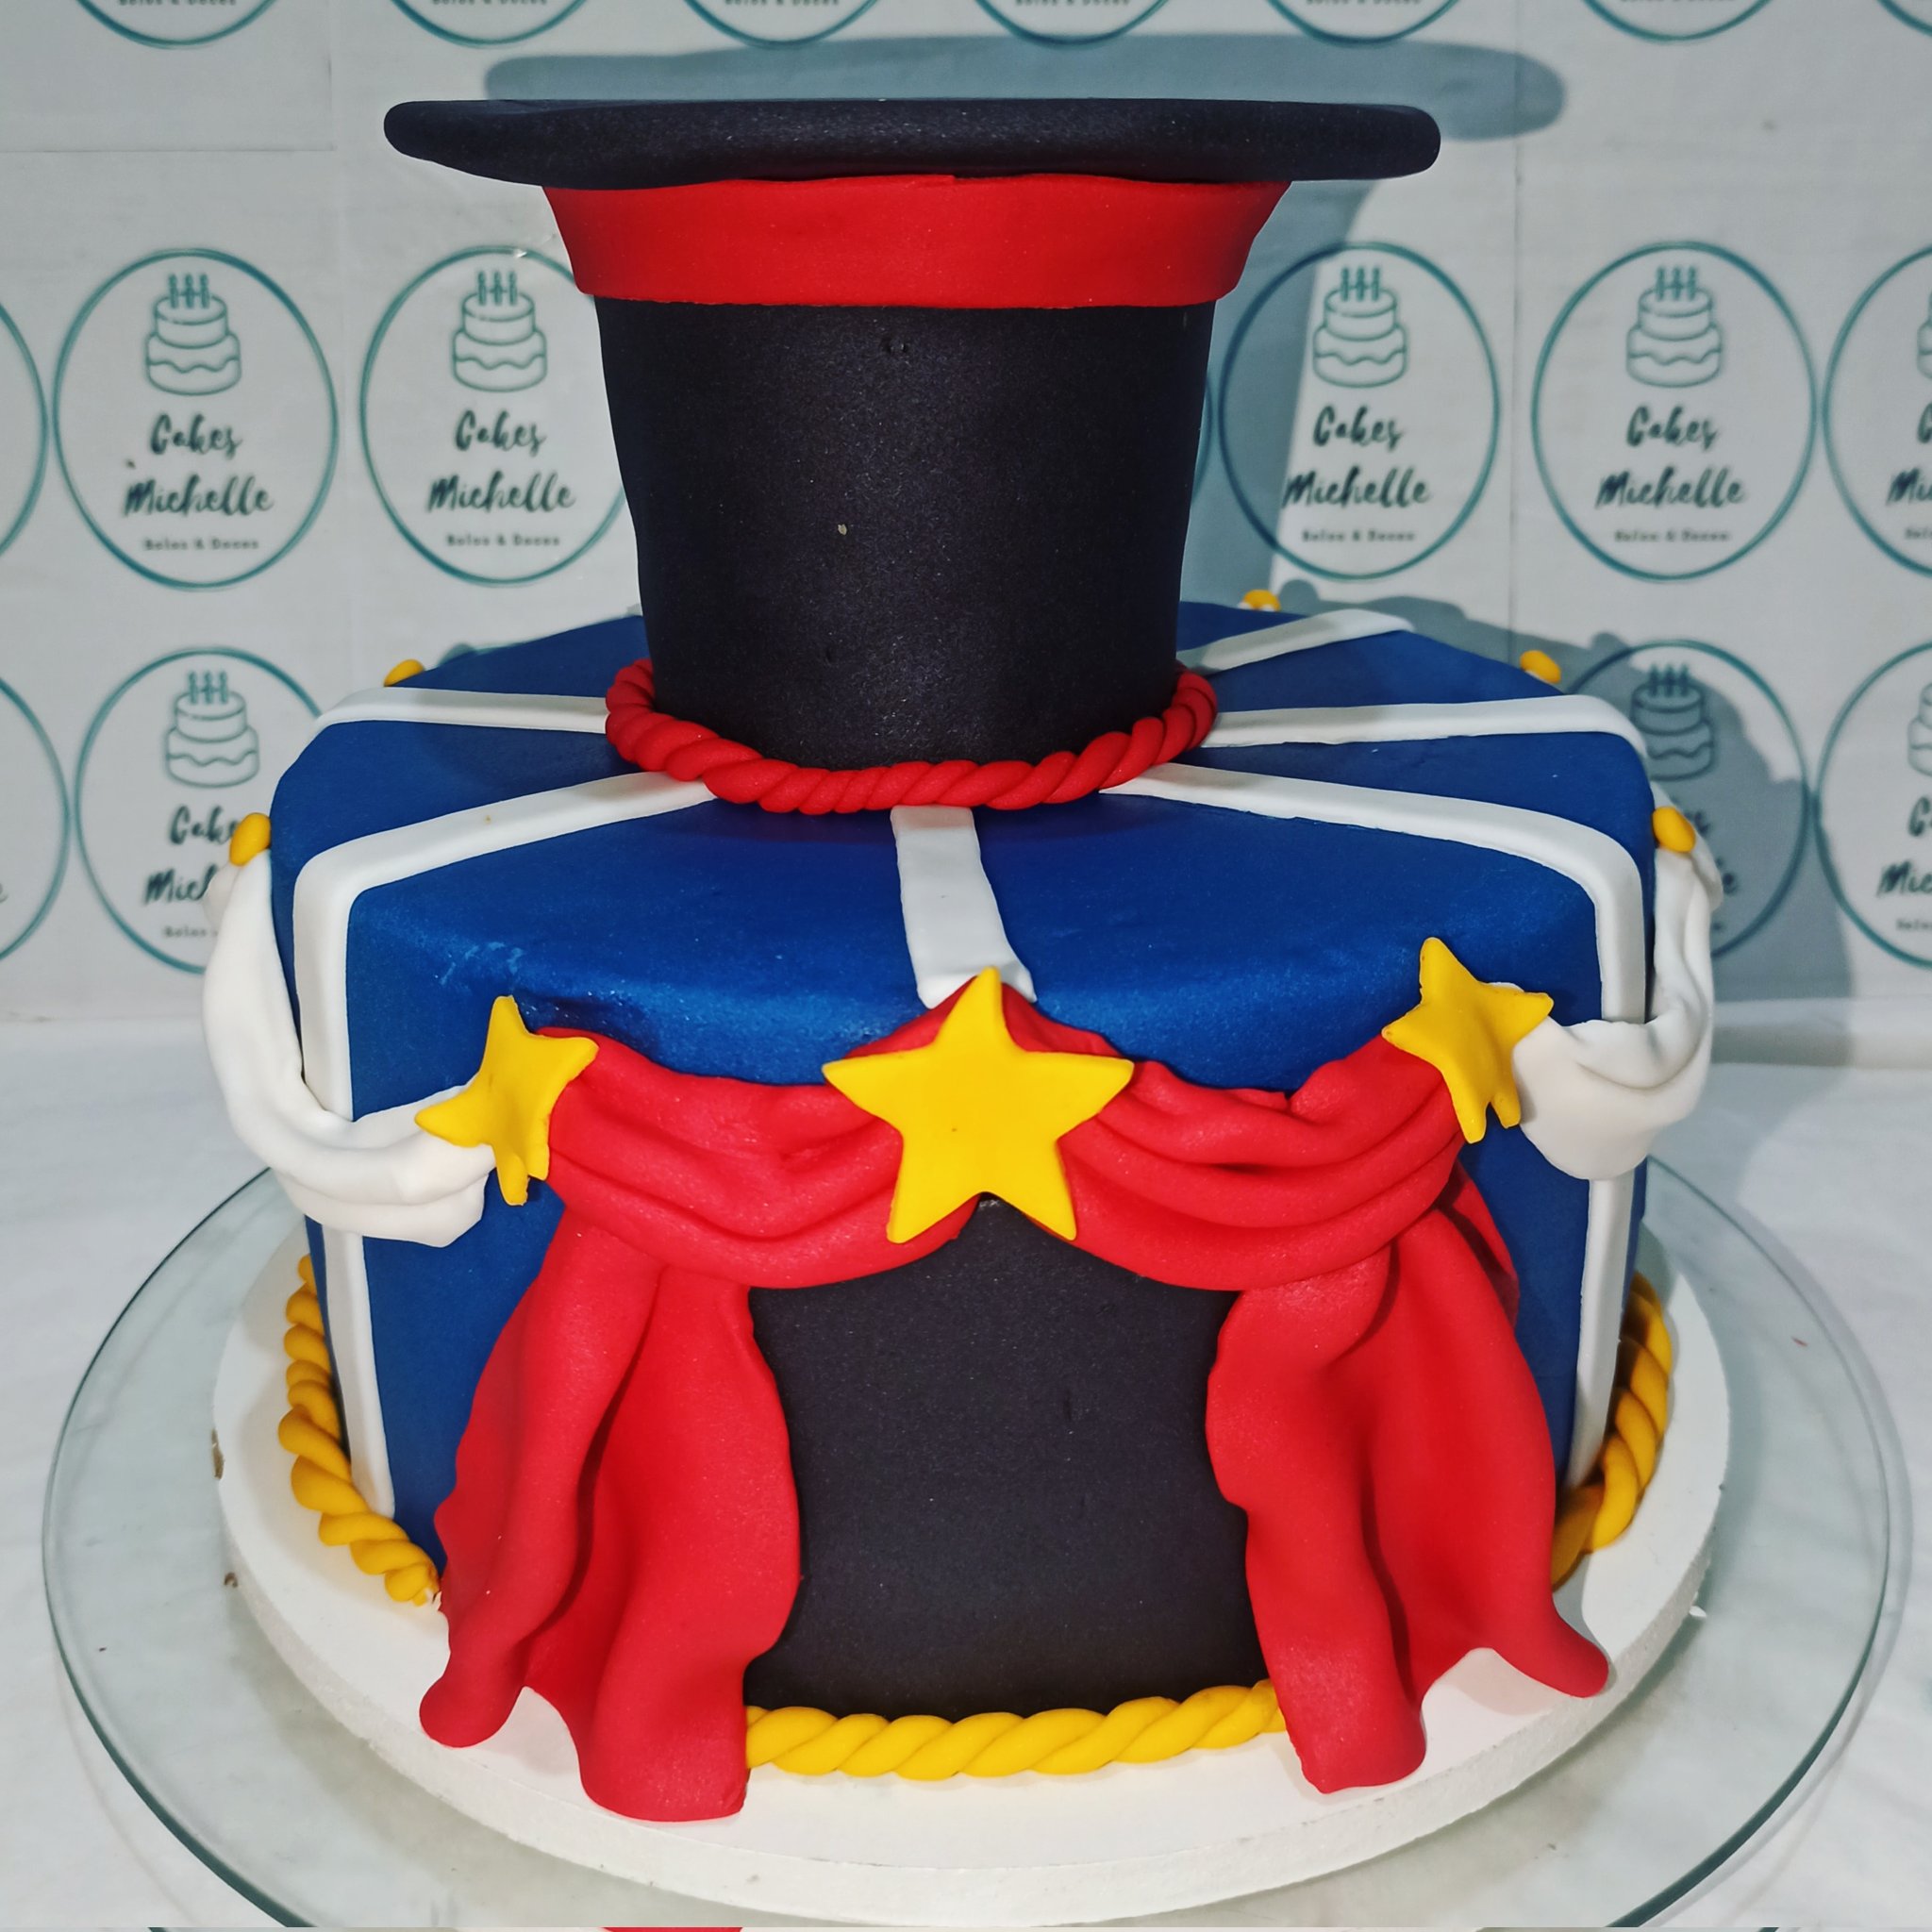 Cakes Michelle on X: Bolo decorado em chantilly com tema